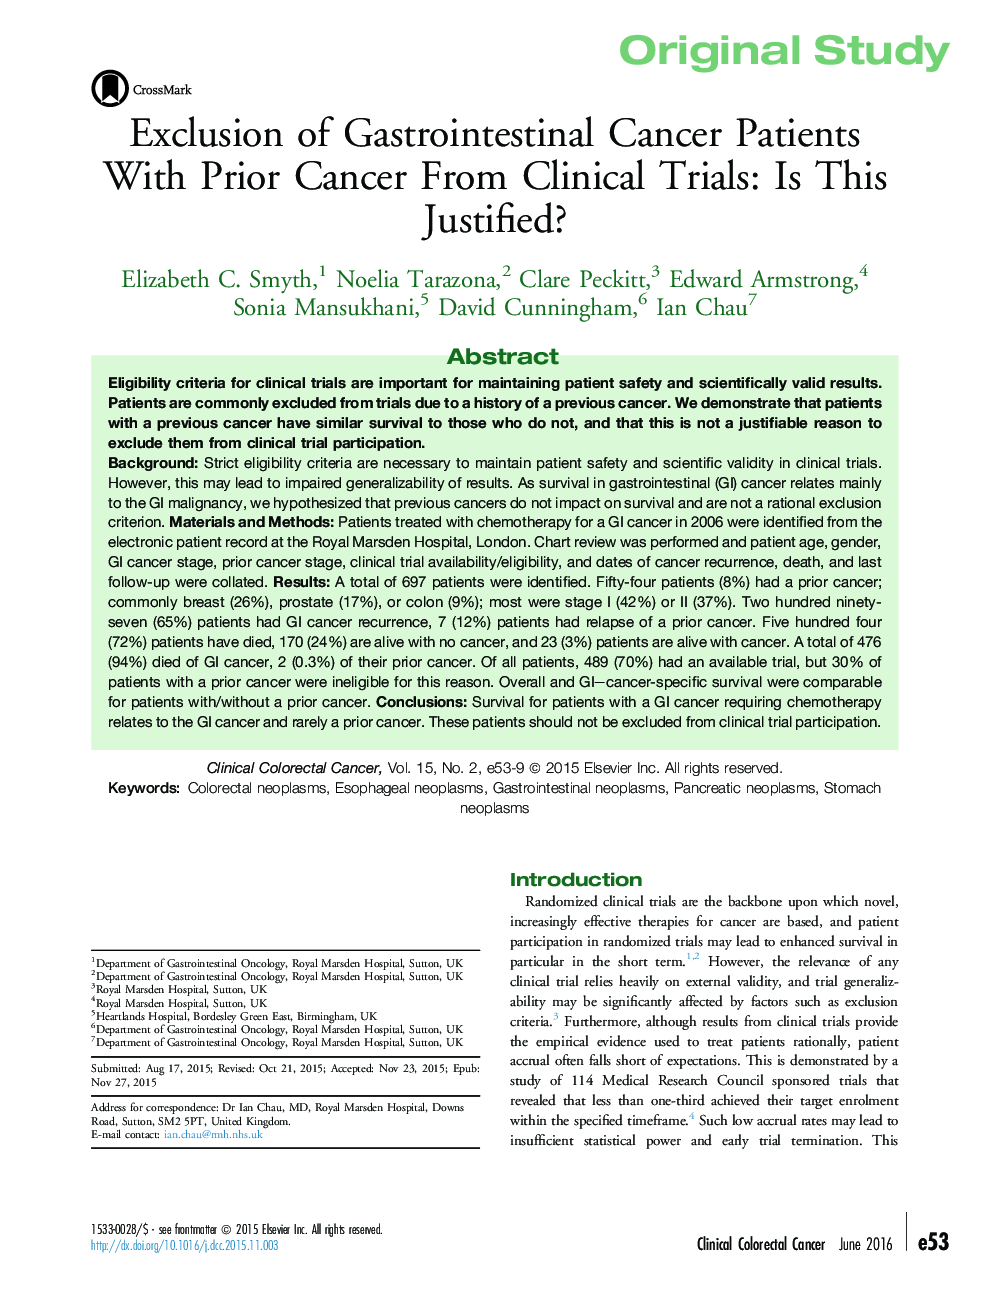 مطالعه اصلی در مورد سرطانهای سرطان معده با سرطان پیش از آزمایشات بالینی: آیا این توجیه است؟ 